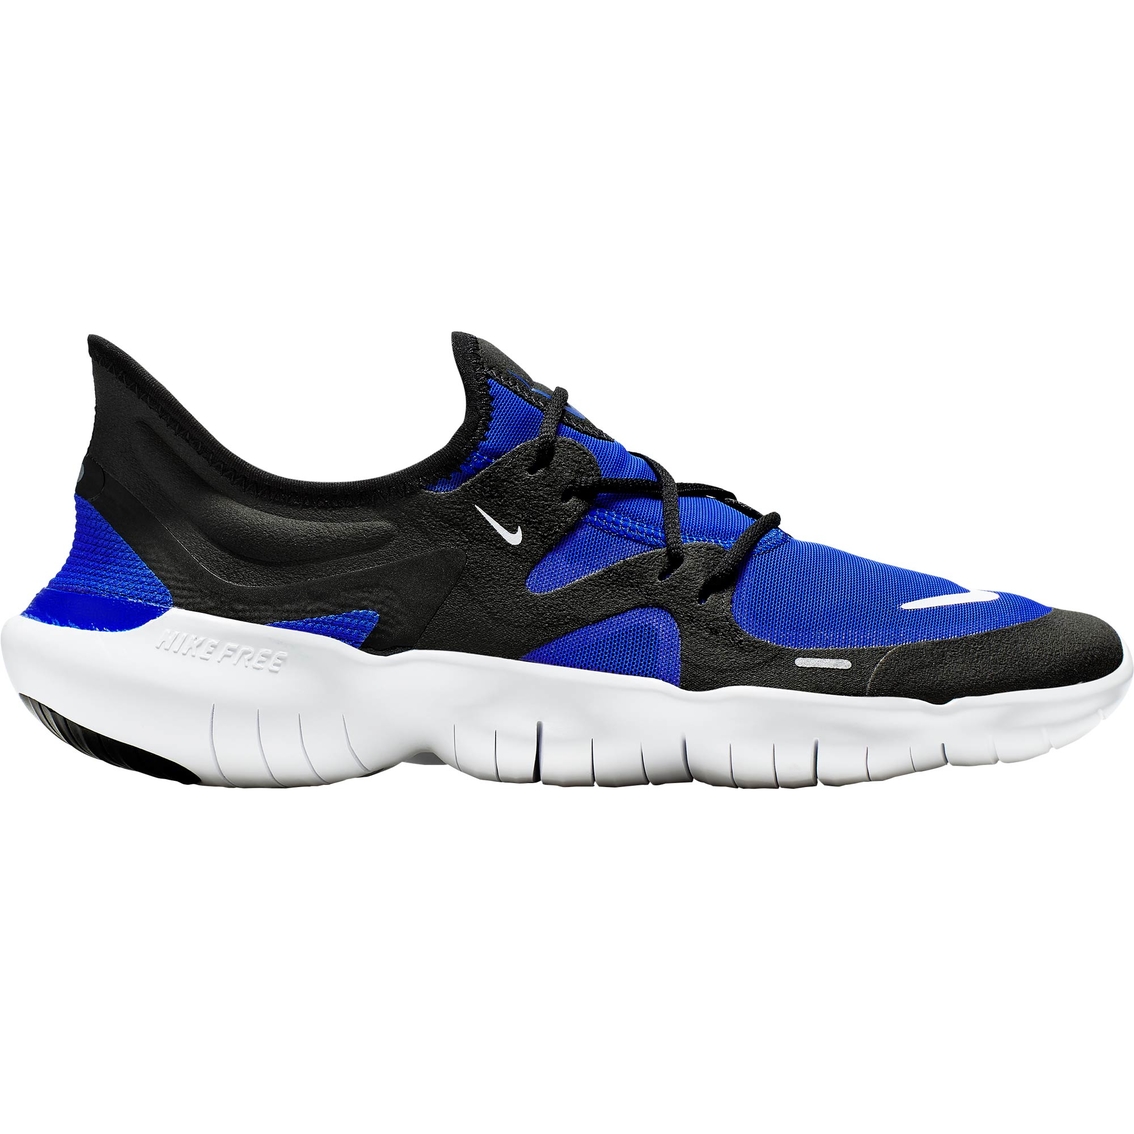 Nike Men's Free RN 5.0 Running Shoes - Image 2 of 6